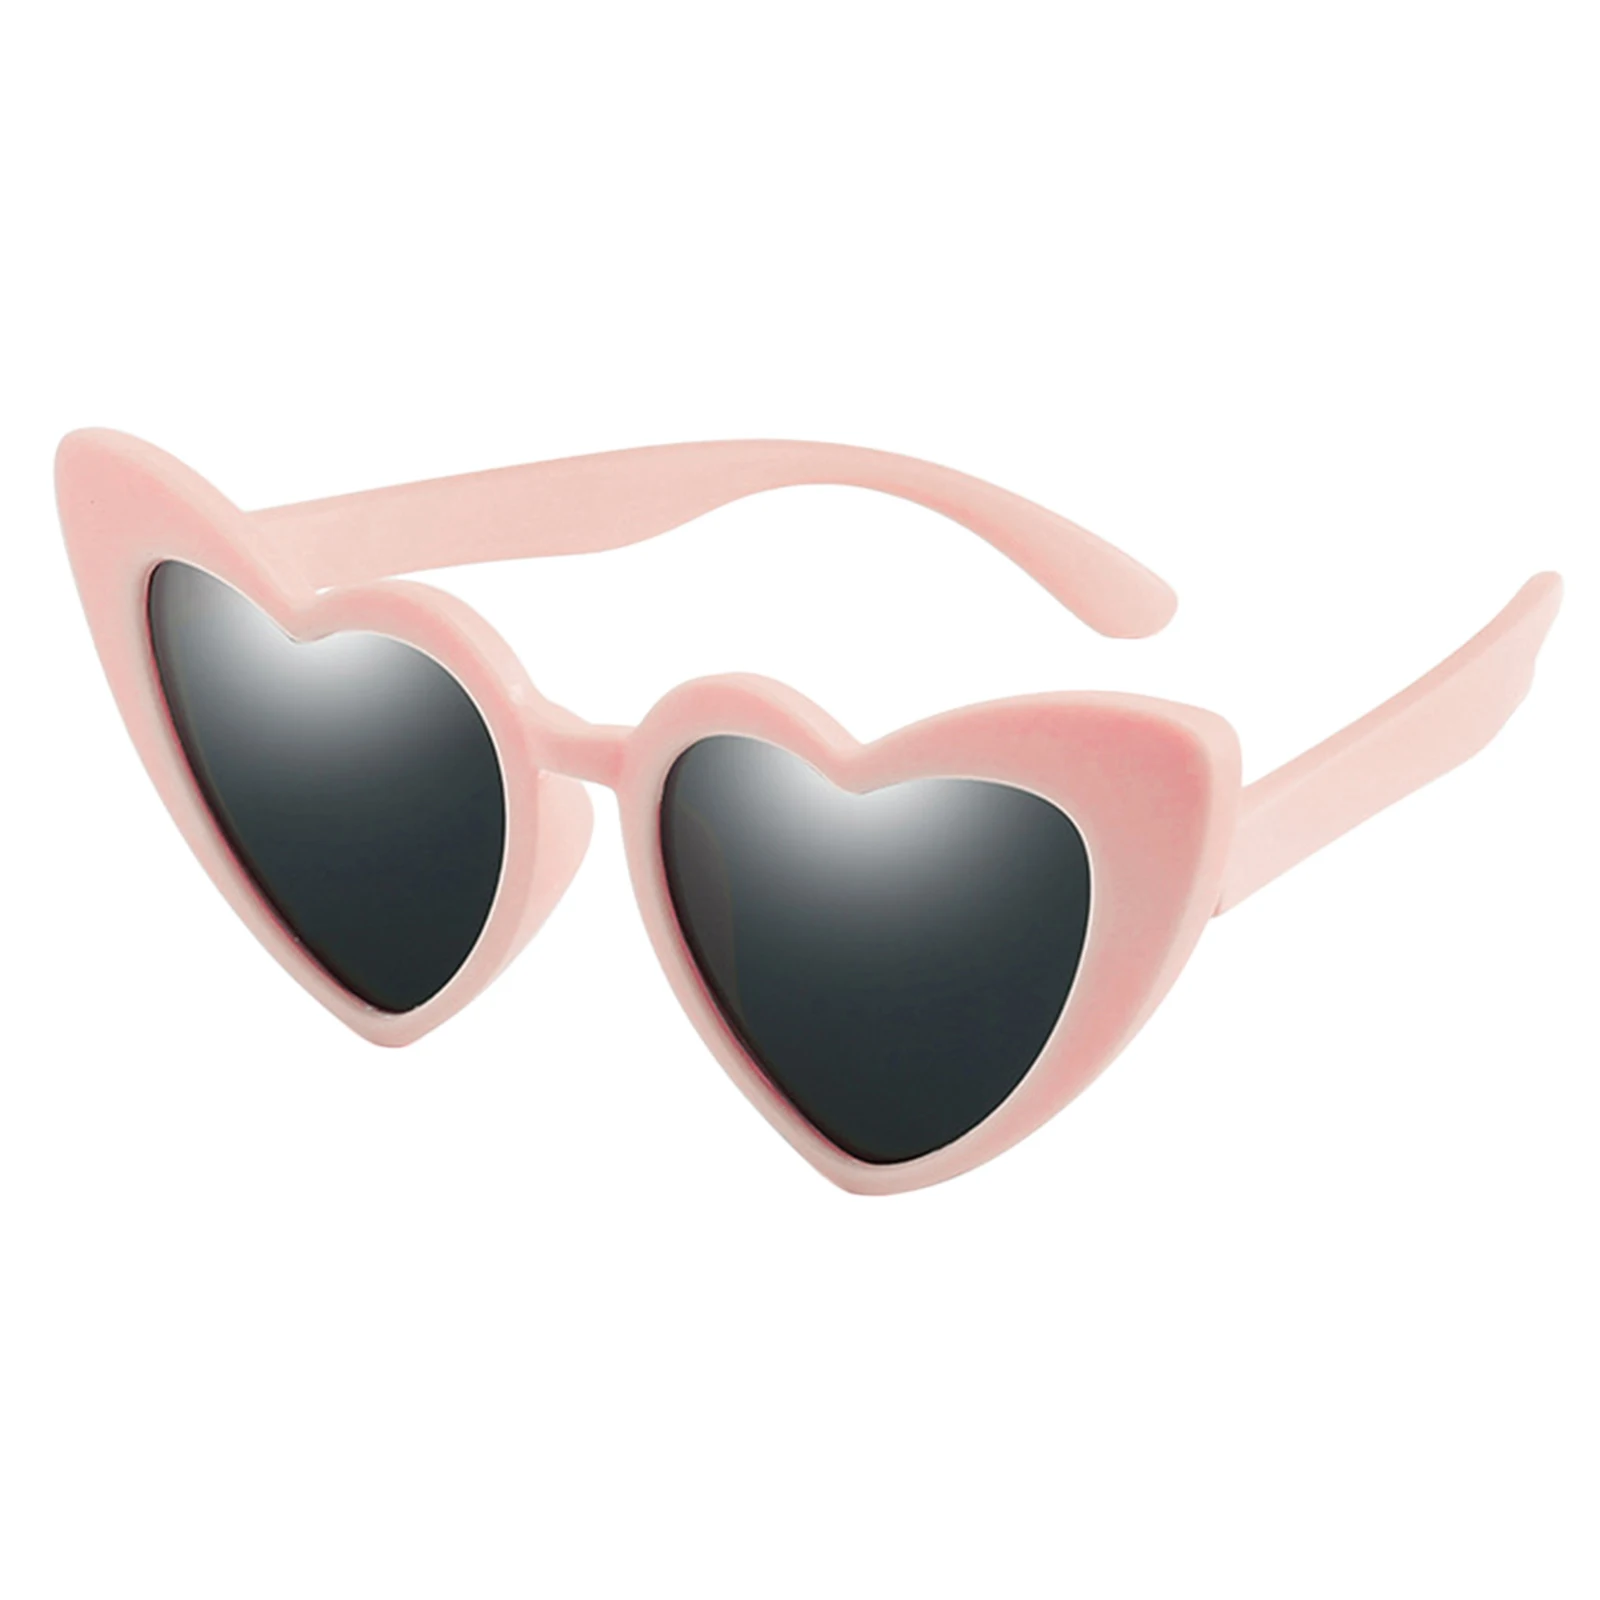 Lovely Kids Heart Shape Sunglasses Toddler Soft Frame UV400 Beach Eyewear